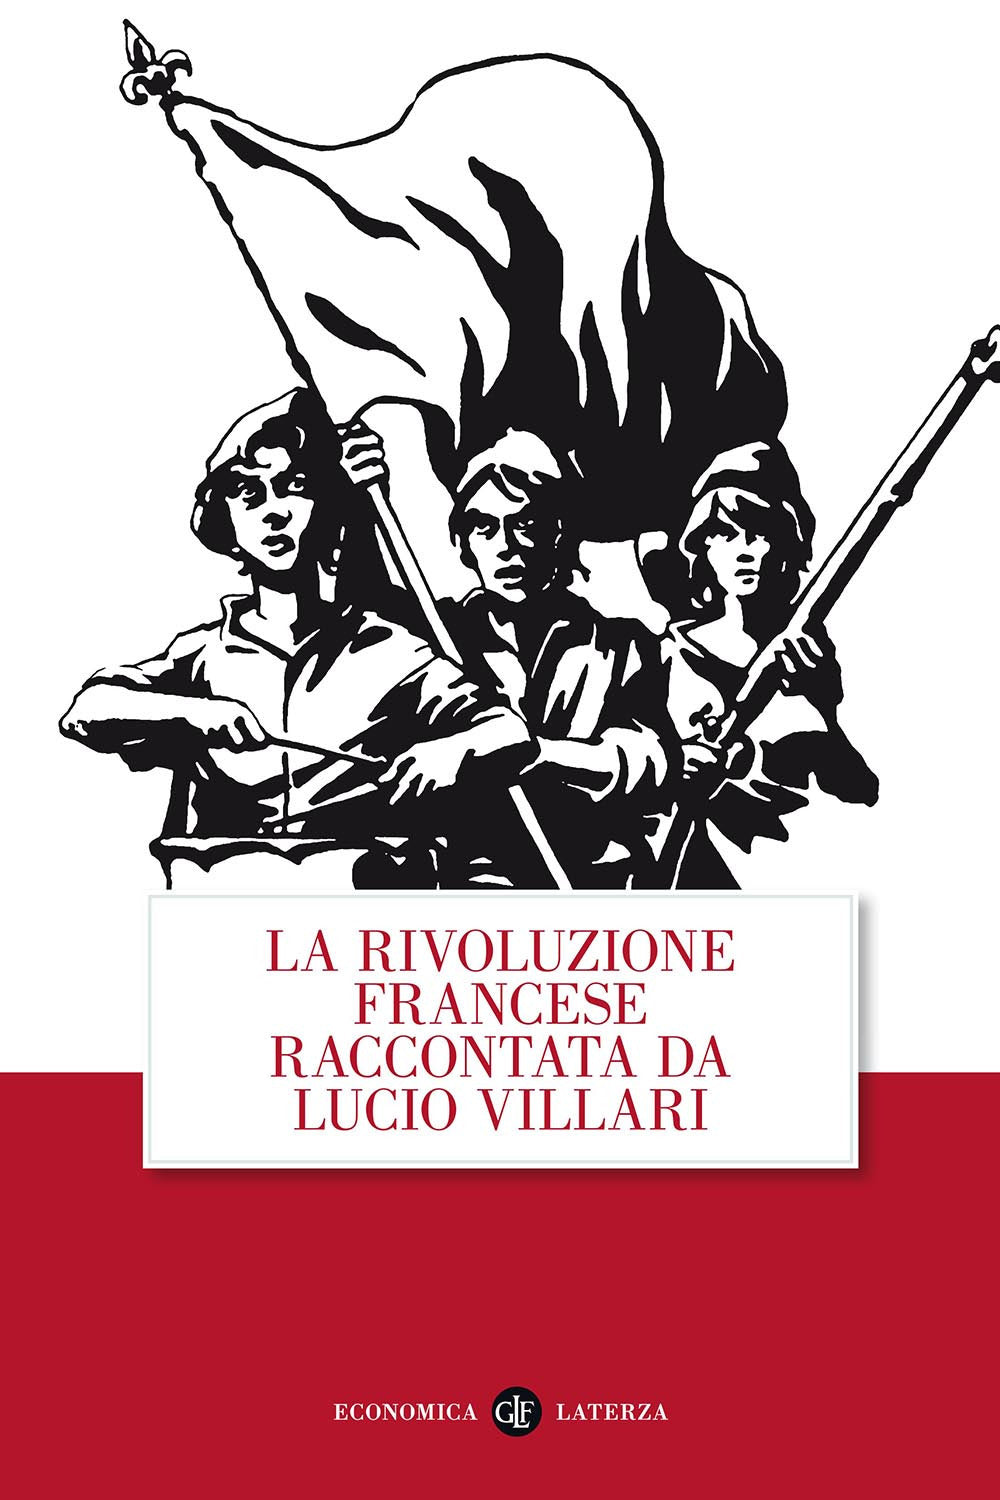 La rivoluzione francese raccontata da Lucio Villari.